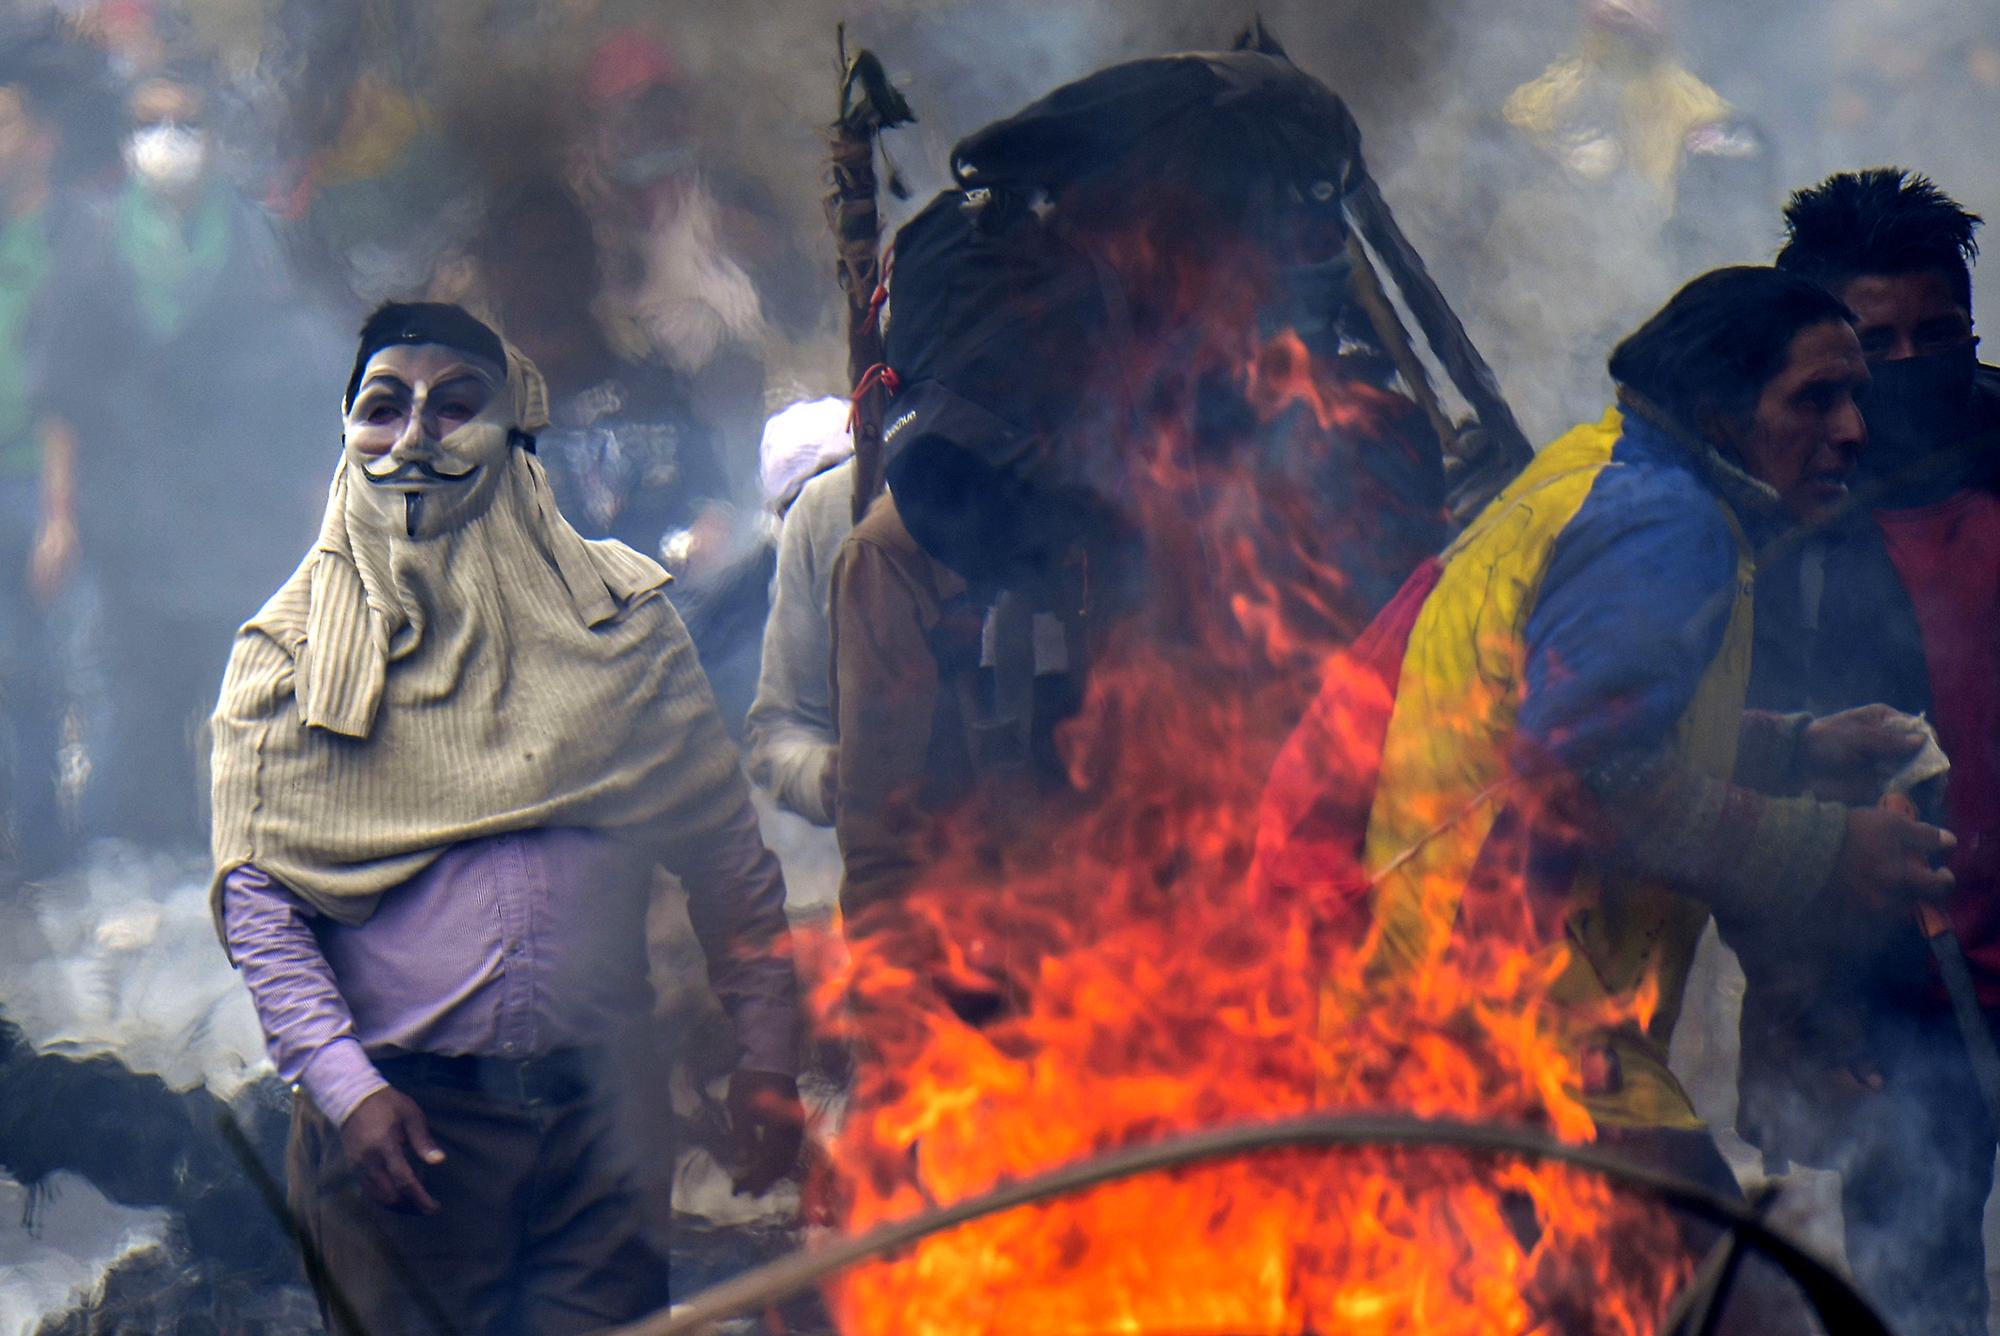 Manifestantes durante una jornada de protestas contra el aumento en el precio del combustible ordenado por el gobierno para asegurar un préstamo del FMI. Quito, Ecuador, 11 de octubre de 2019. Foto por Martin Bernetti / AFP.